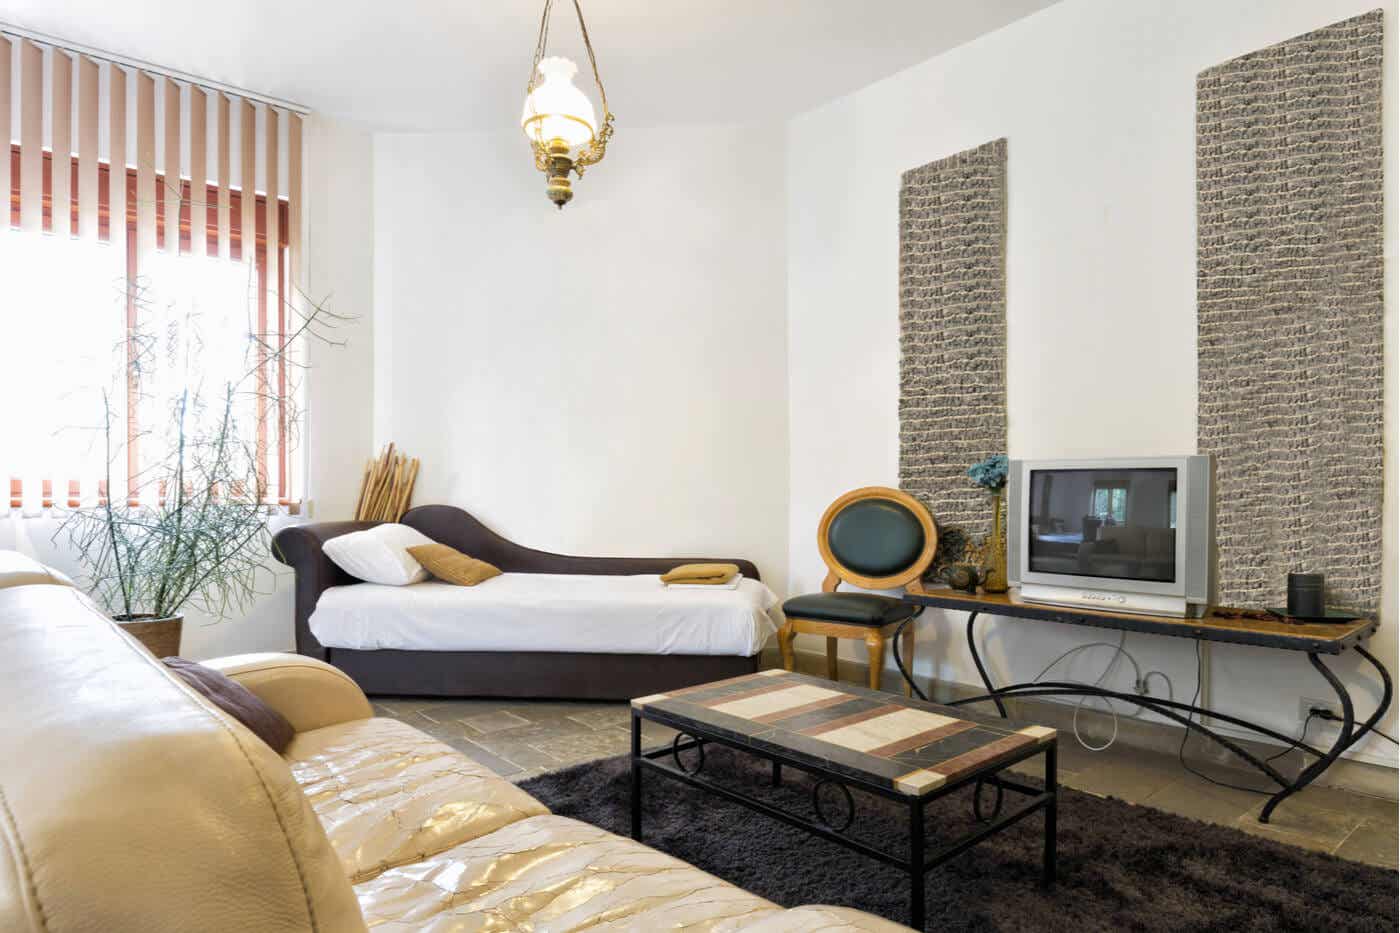 Trang trí phòng khách cần sự hài hòa trong các phối màu sắc đồ nội thất với màu tường.